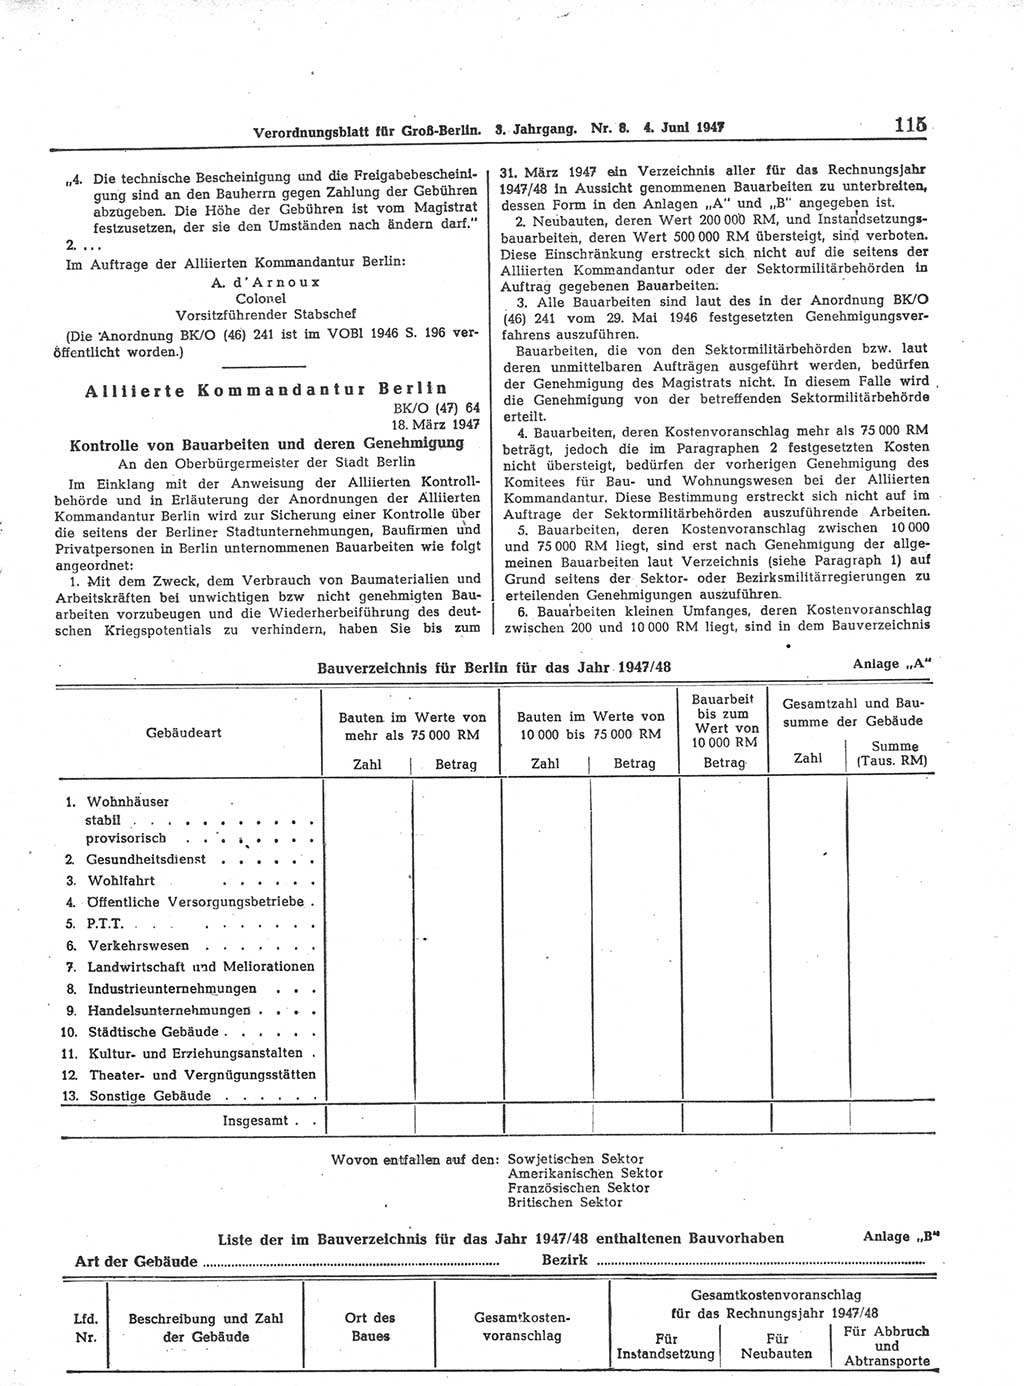 Verordnungsblatt (VOBl.) für Groß-Berlin 1947, Seite 115 (VOBl. Bln. 1947, S. 115)